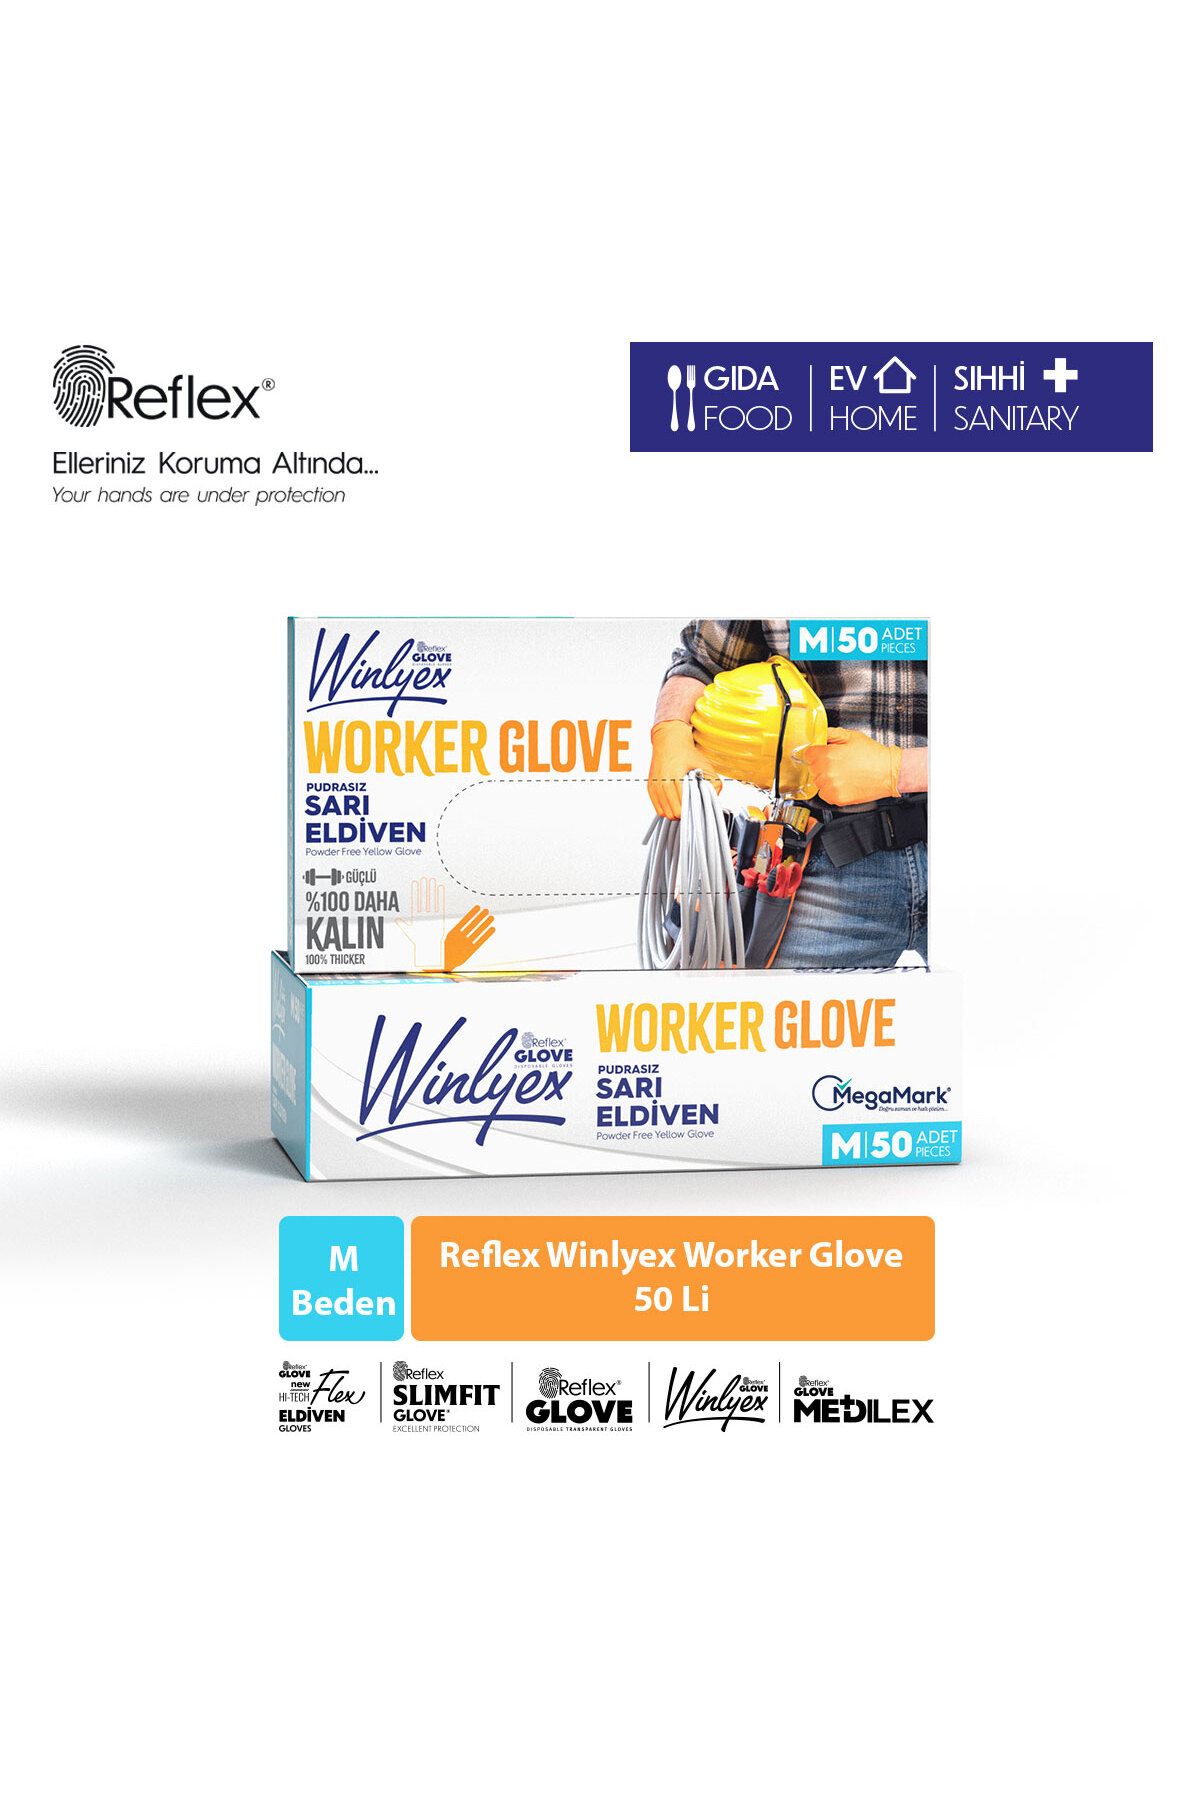 Reflex Winlyex Worker Glove Pudrasız Sarı Eldiven M Beden 50'li